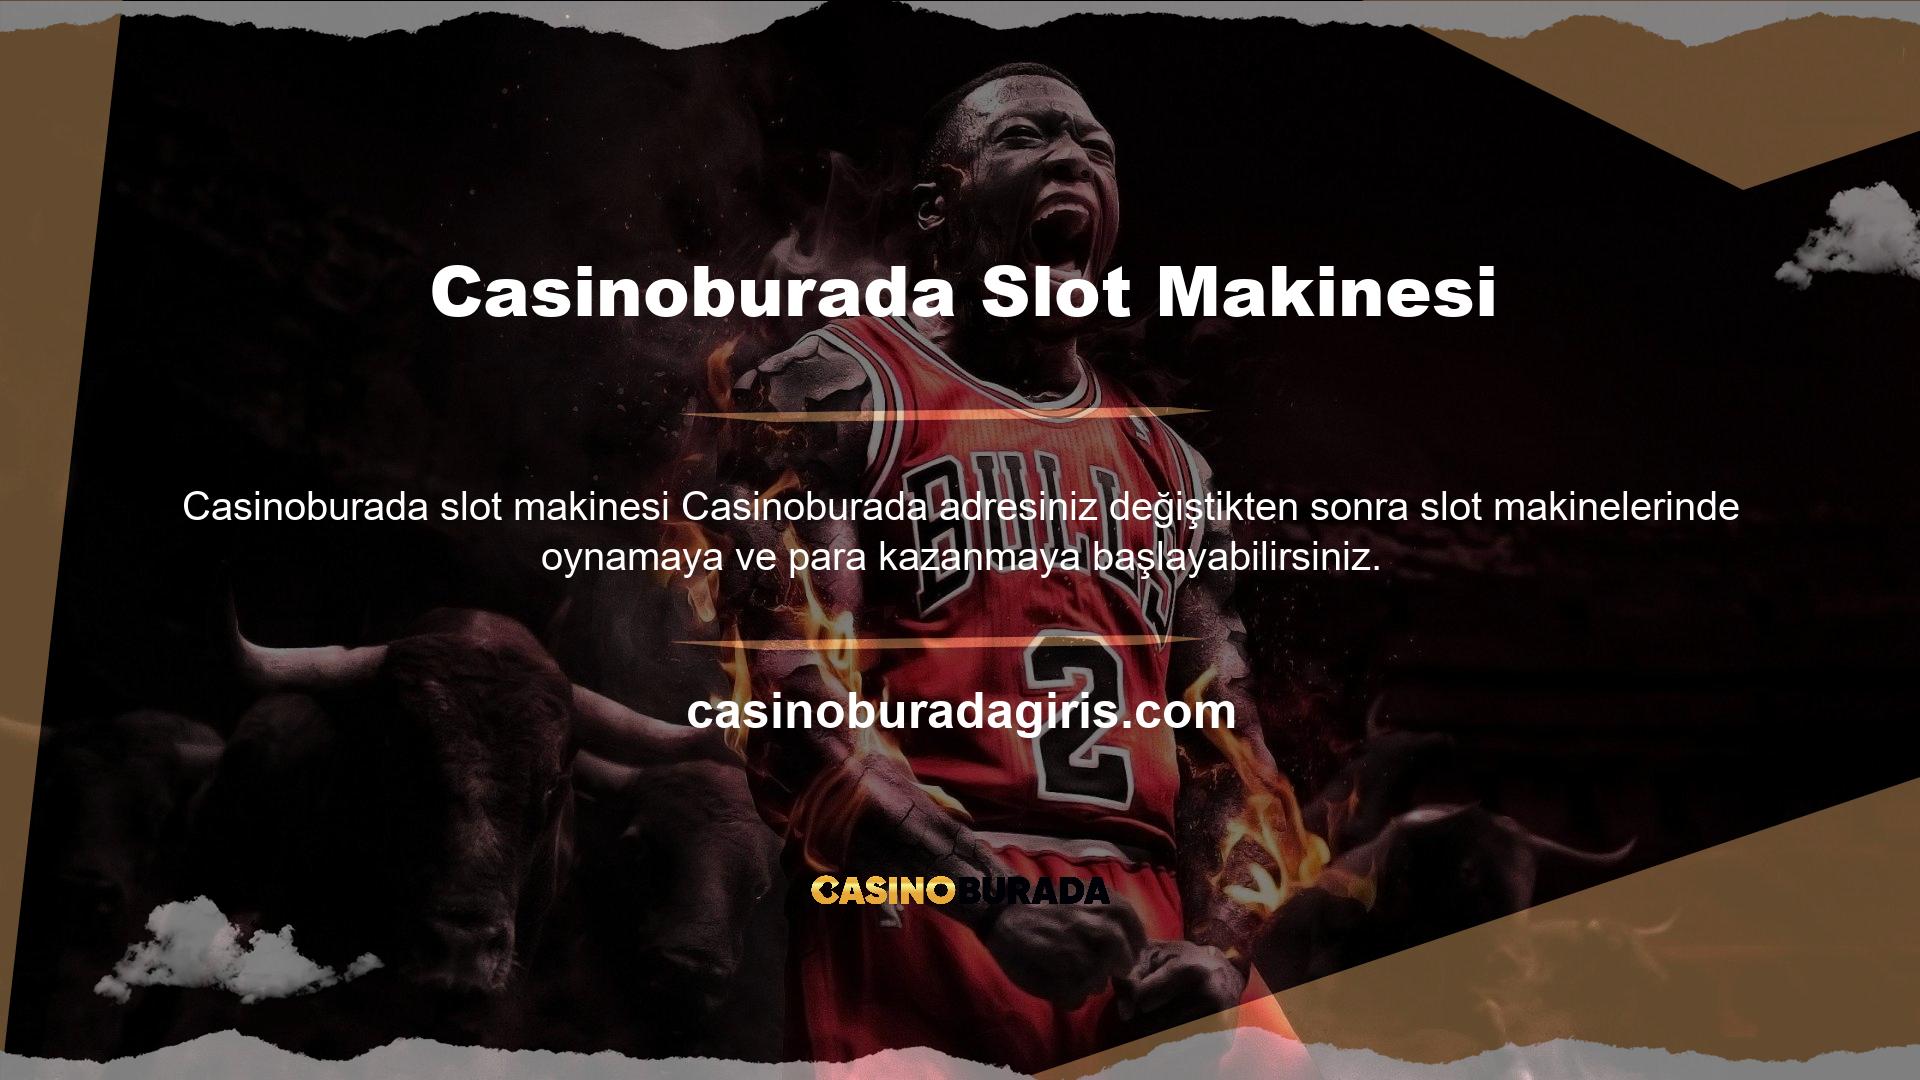 Ancak Casinoburada şu anda dünyanın her yerinden birçok slot makinesinde oynamanıza izin veren bir bahis sitesidir